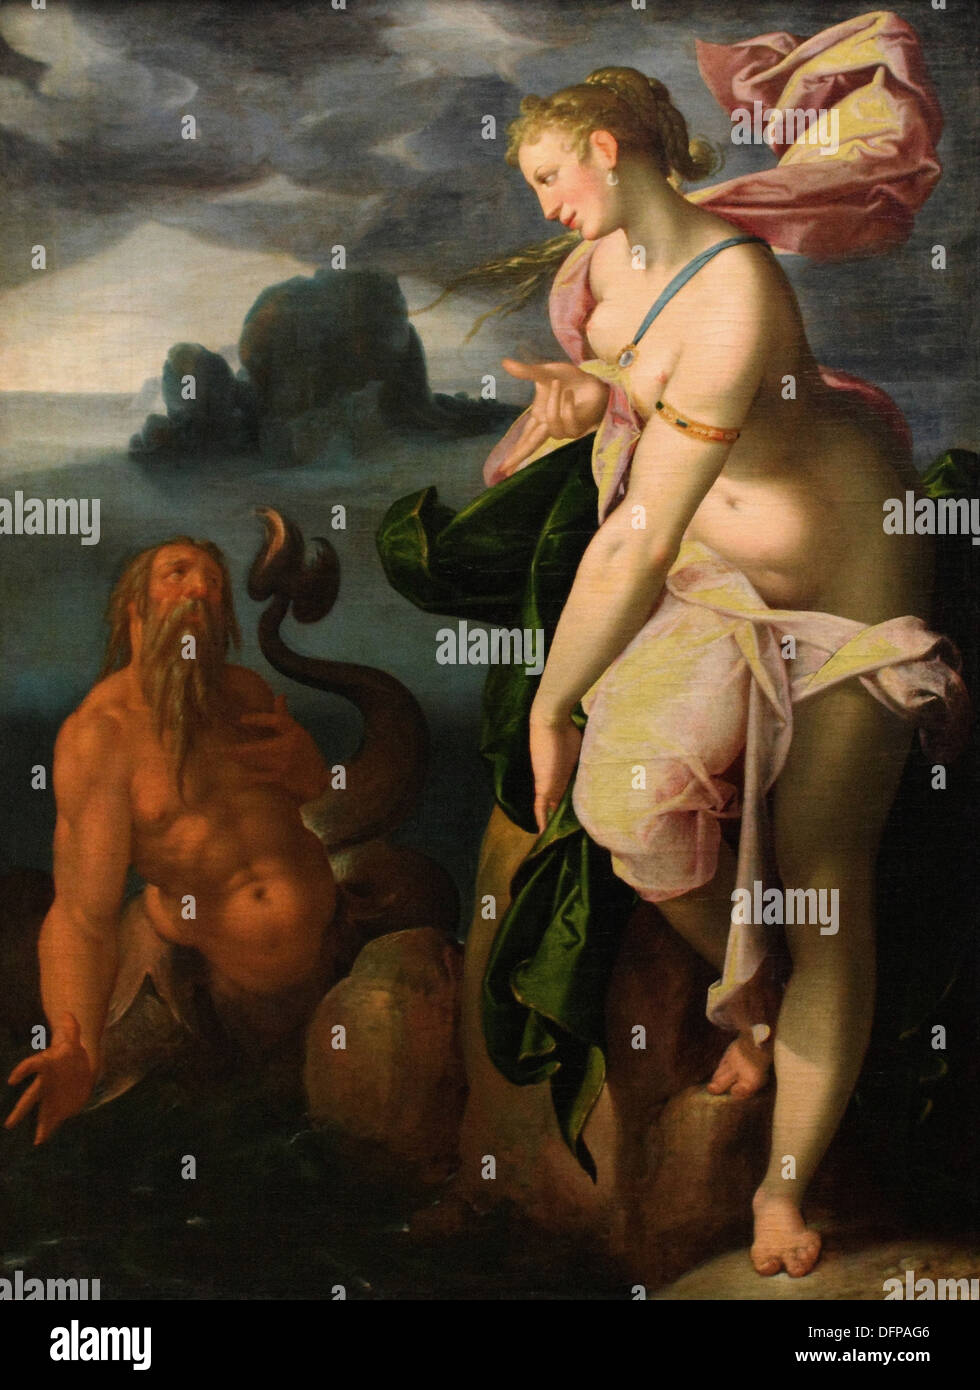 Bartholomäus SPRANGER - Glaucus et Scylla - 1582 - Vienne Kunsthistoriches Museum - Banque D'Images